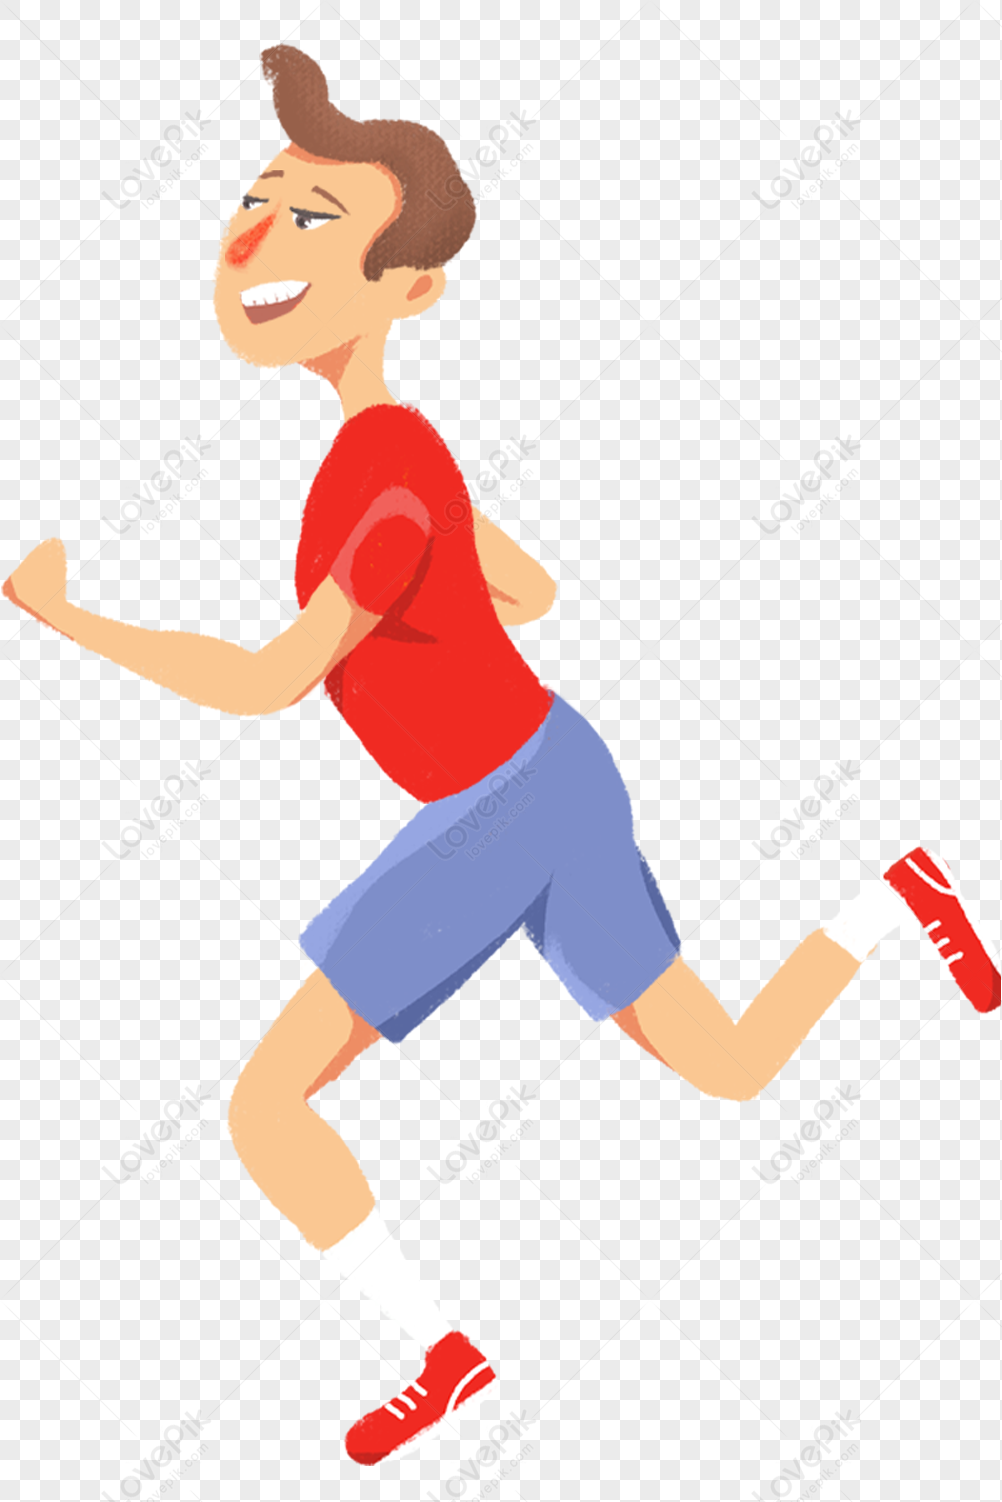 Звук бегущего мальчика. Мальчик бежит рисунок. Мальчик бежит в графике. Бегущий мальчик с рукой наверх рисунок. Рисунок бегущего мальчика с сачком.